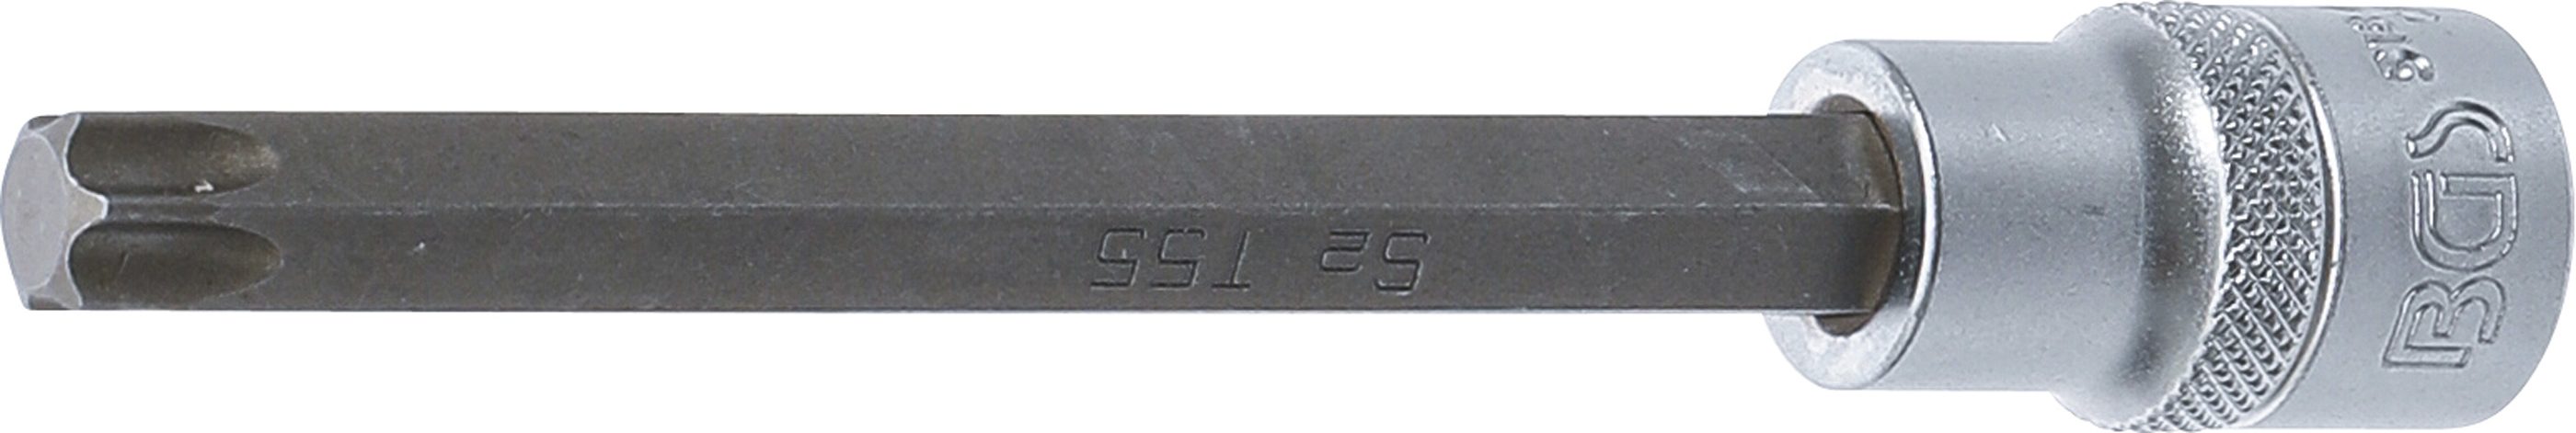 BGS 5184-T55 Bit Torx T55, lungime 140mm, antrenare cu tubulara 1/2"